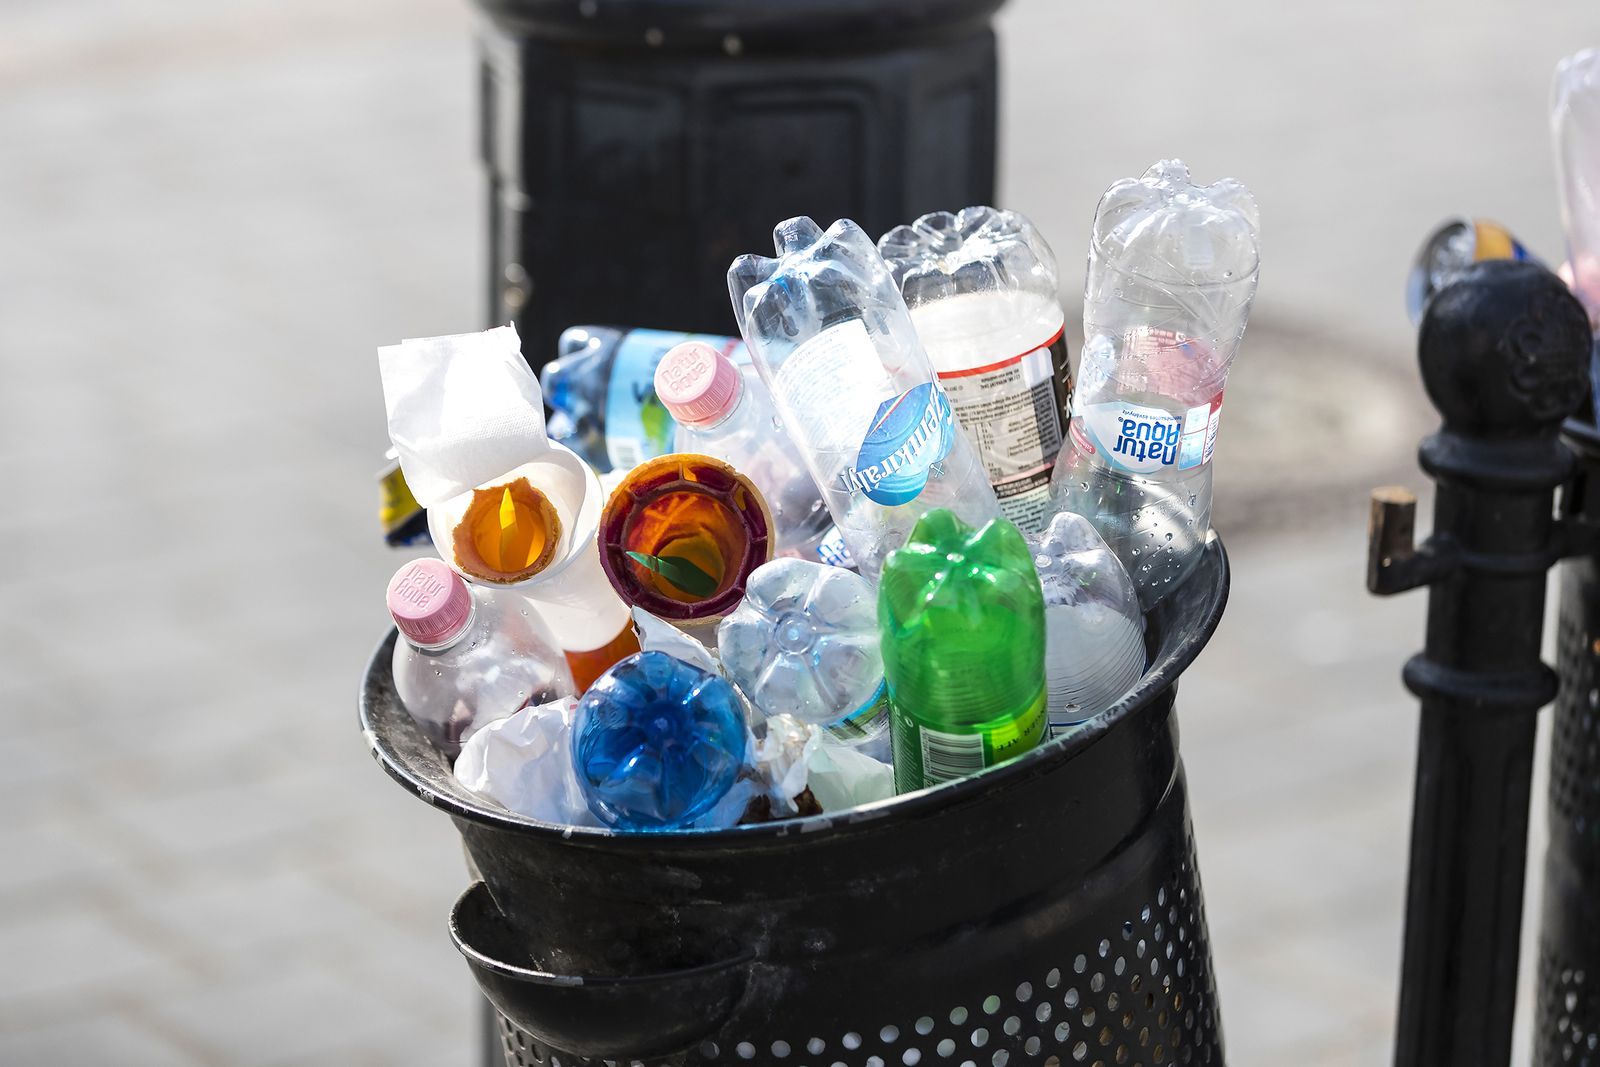 Ilustrační snímek / PET láhev / Přeplněný koš / Odpad / Recyklace / Ekologie / Plasty / Shutterstock